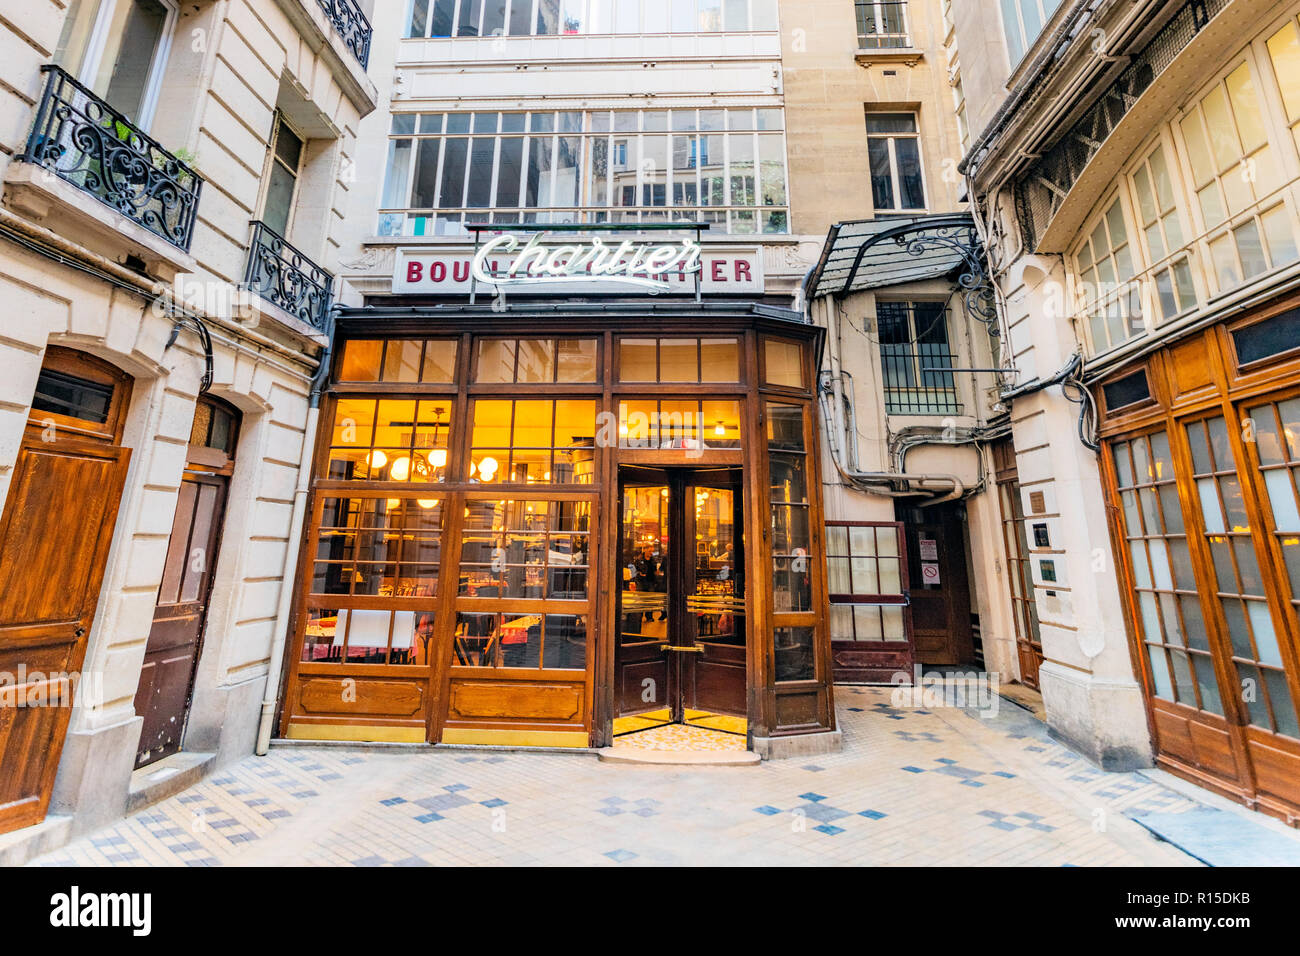 Parigi, 27 Ottobre 2018 - la facciata anteriore della 'Boullon Chartier' ristorante essere elevata in una storia monumento a Parigi dove continua a servire i pasti per Foto Stock